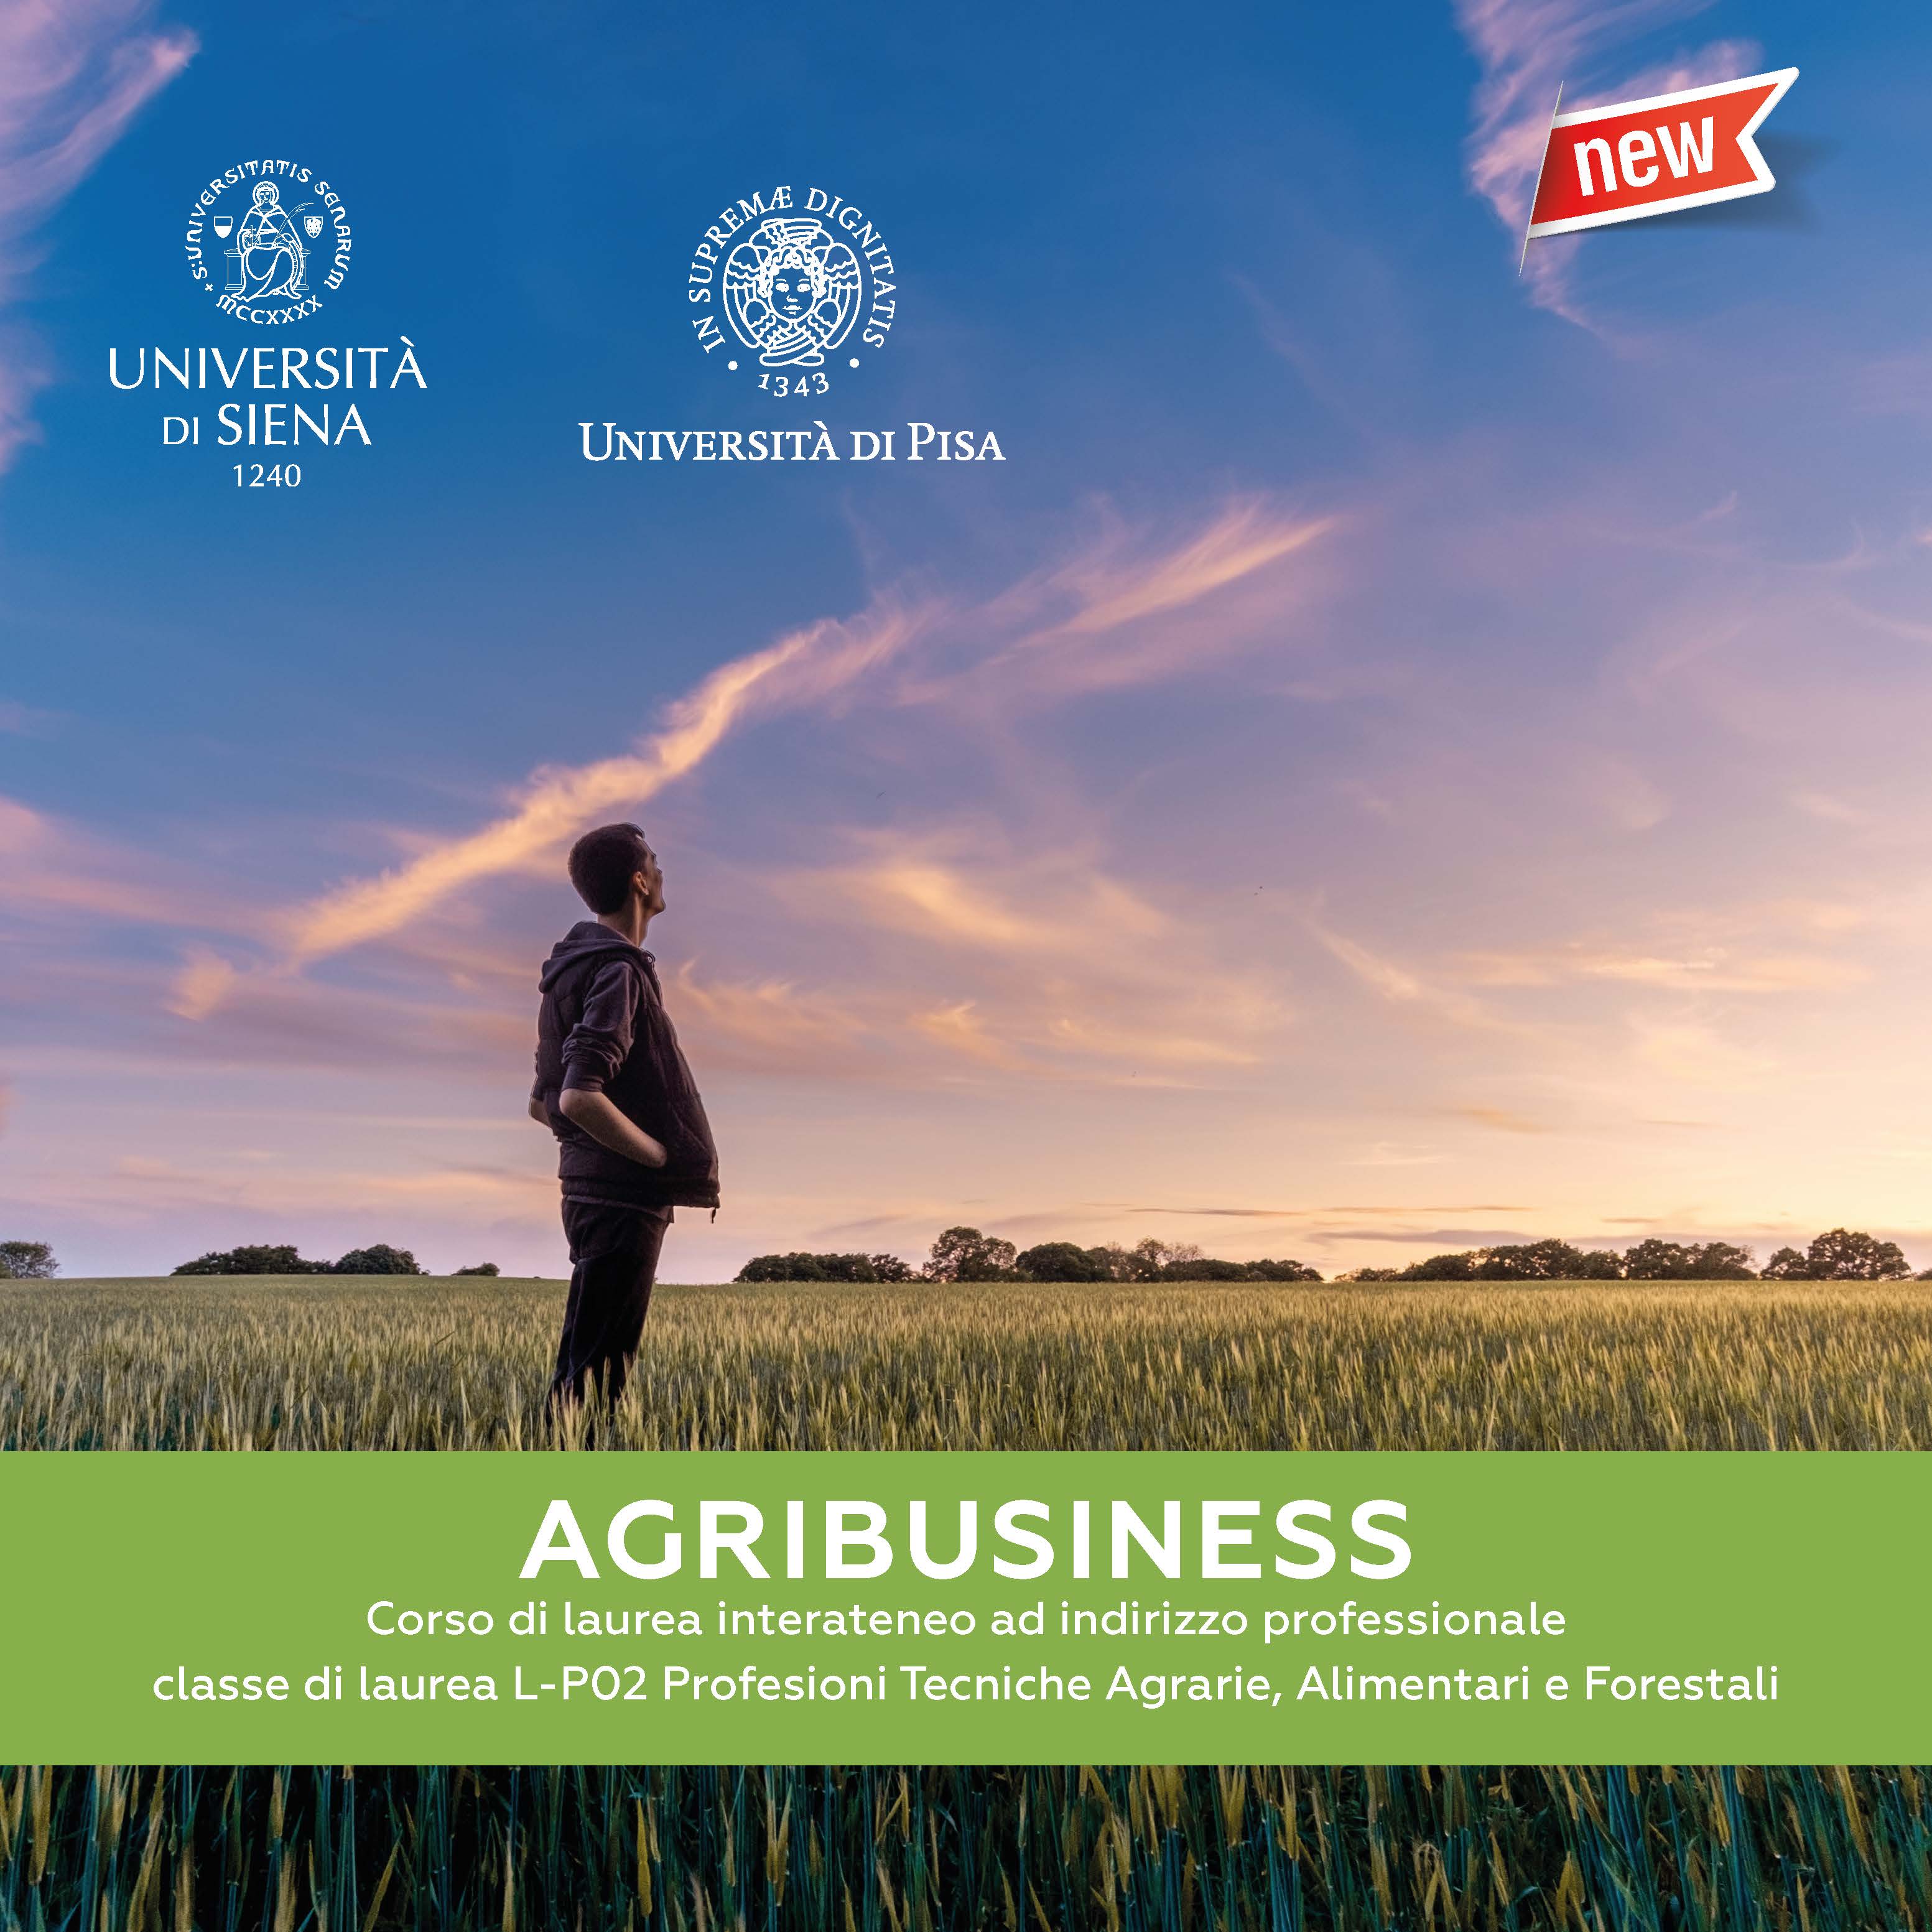 24 maggio, ore 16. Agribusiness Day 2022. Incontro informativo sul corso di laurea professionalizzante in Agribusiness - Università di Siena